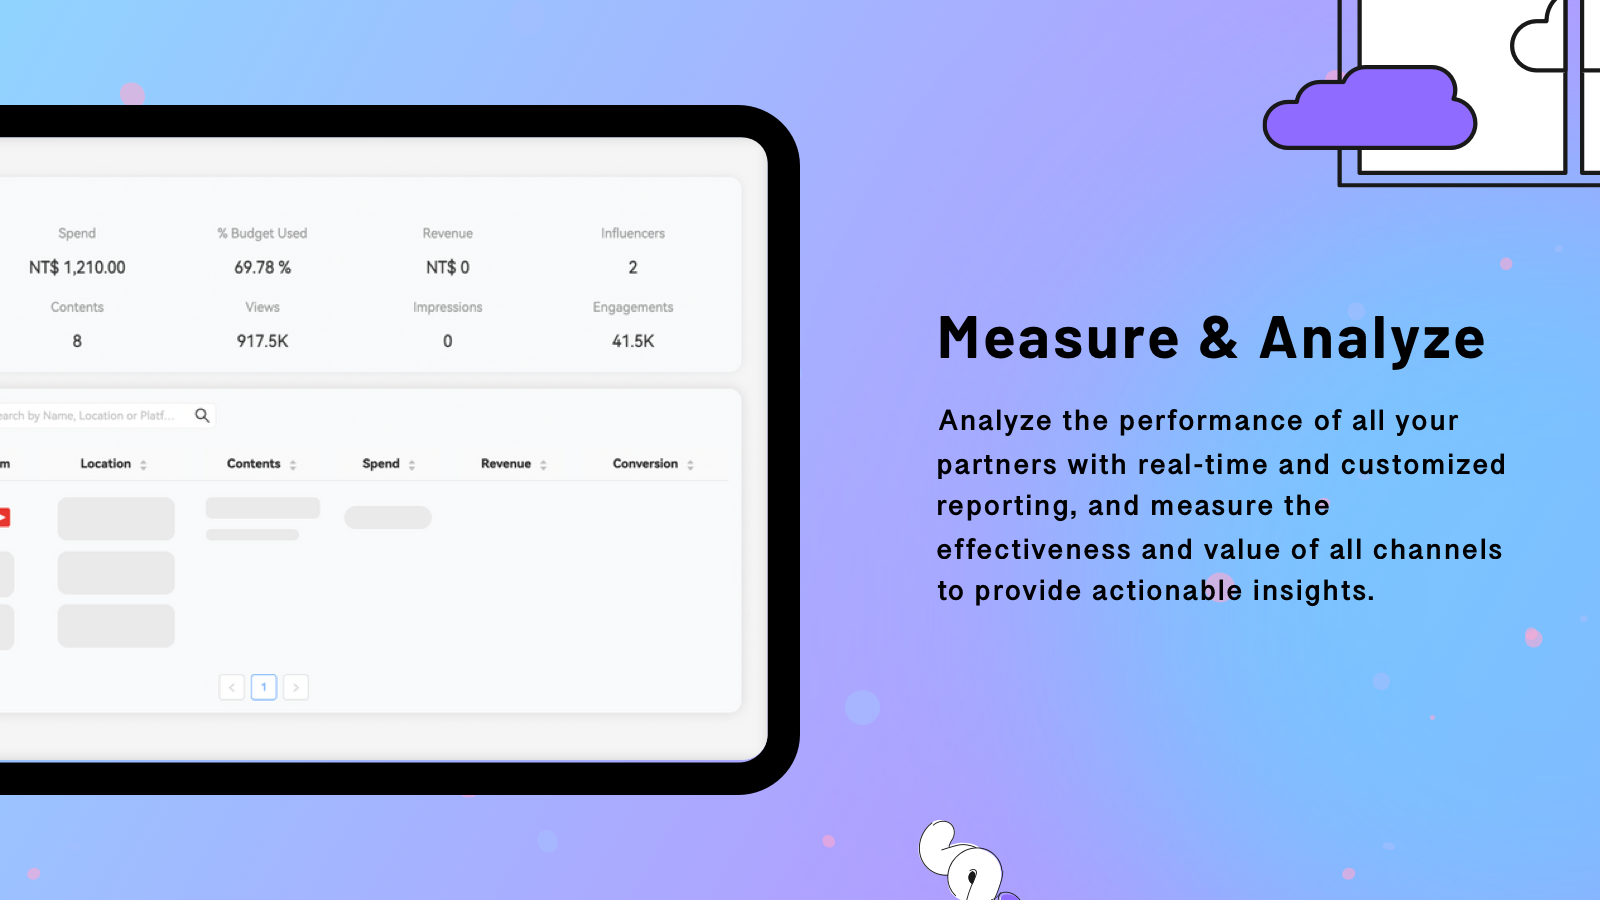 Measure & Analyze